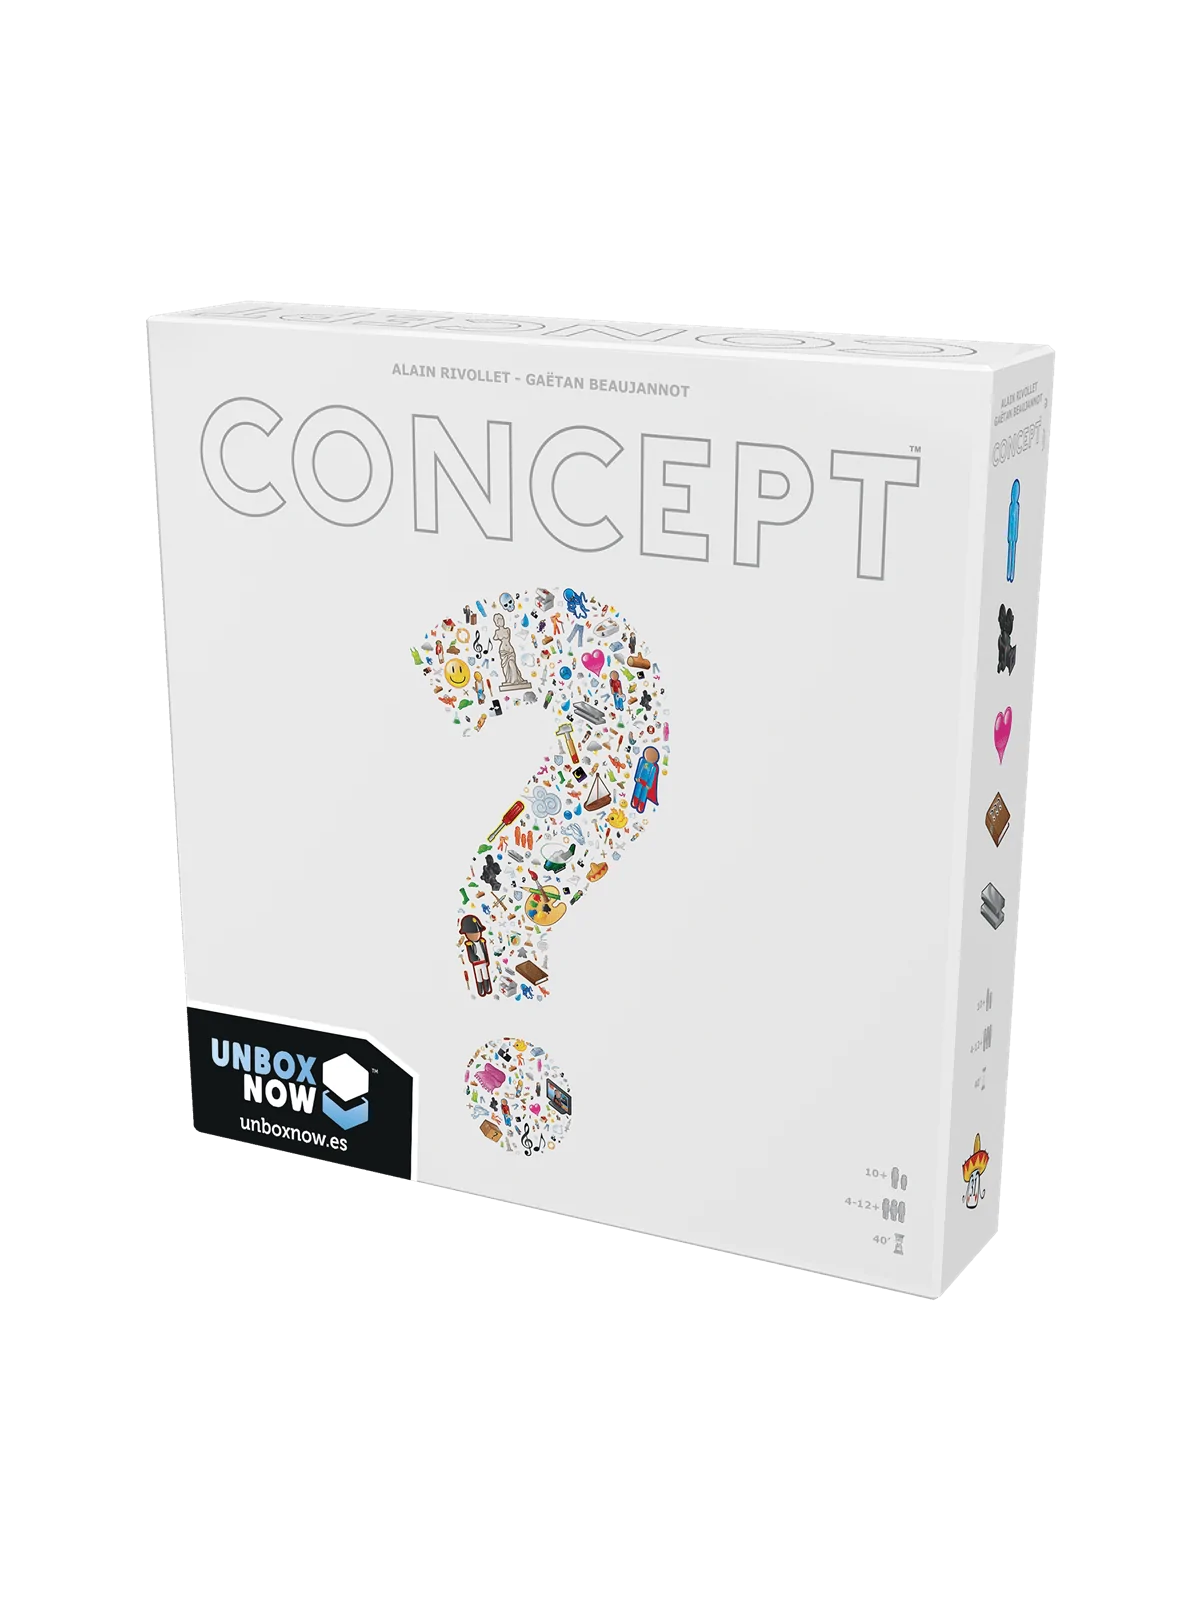 Comprar Concept barato al mejor precio 28,79 € de Repos Production